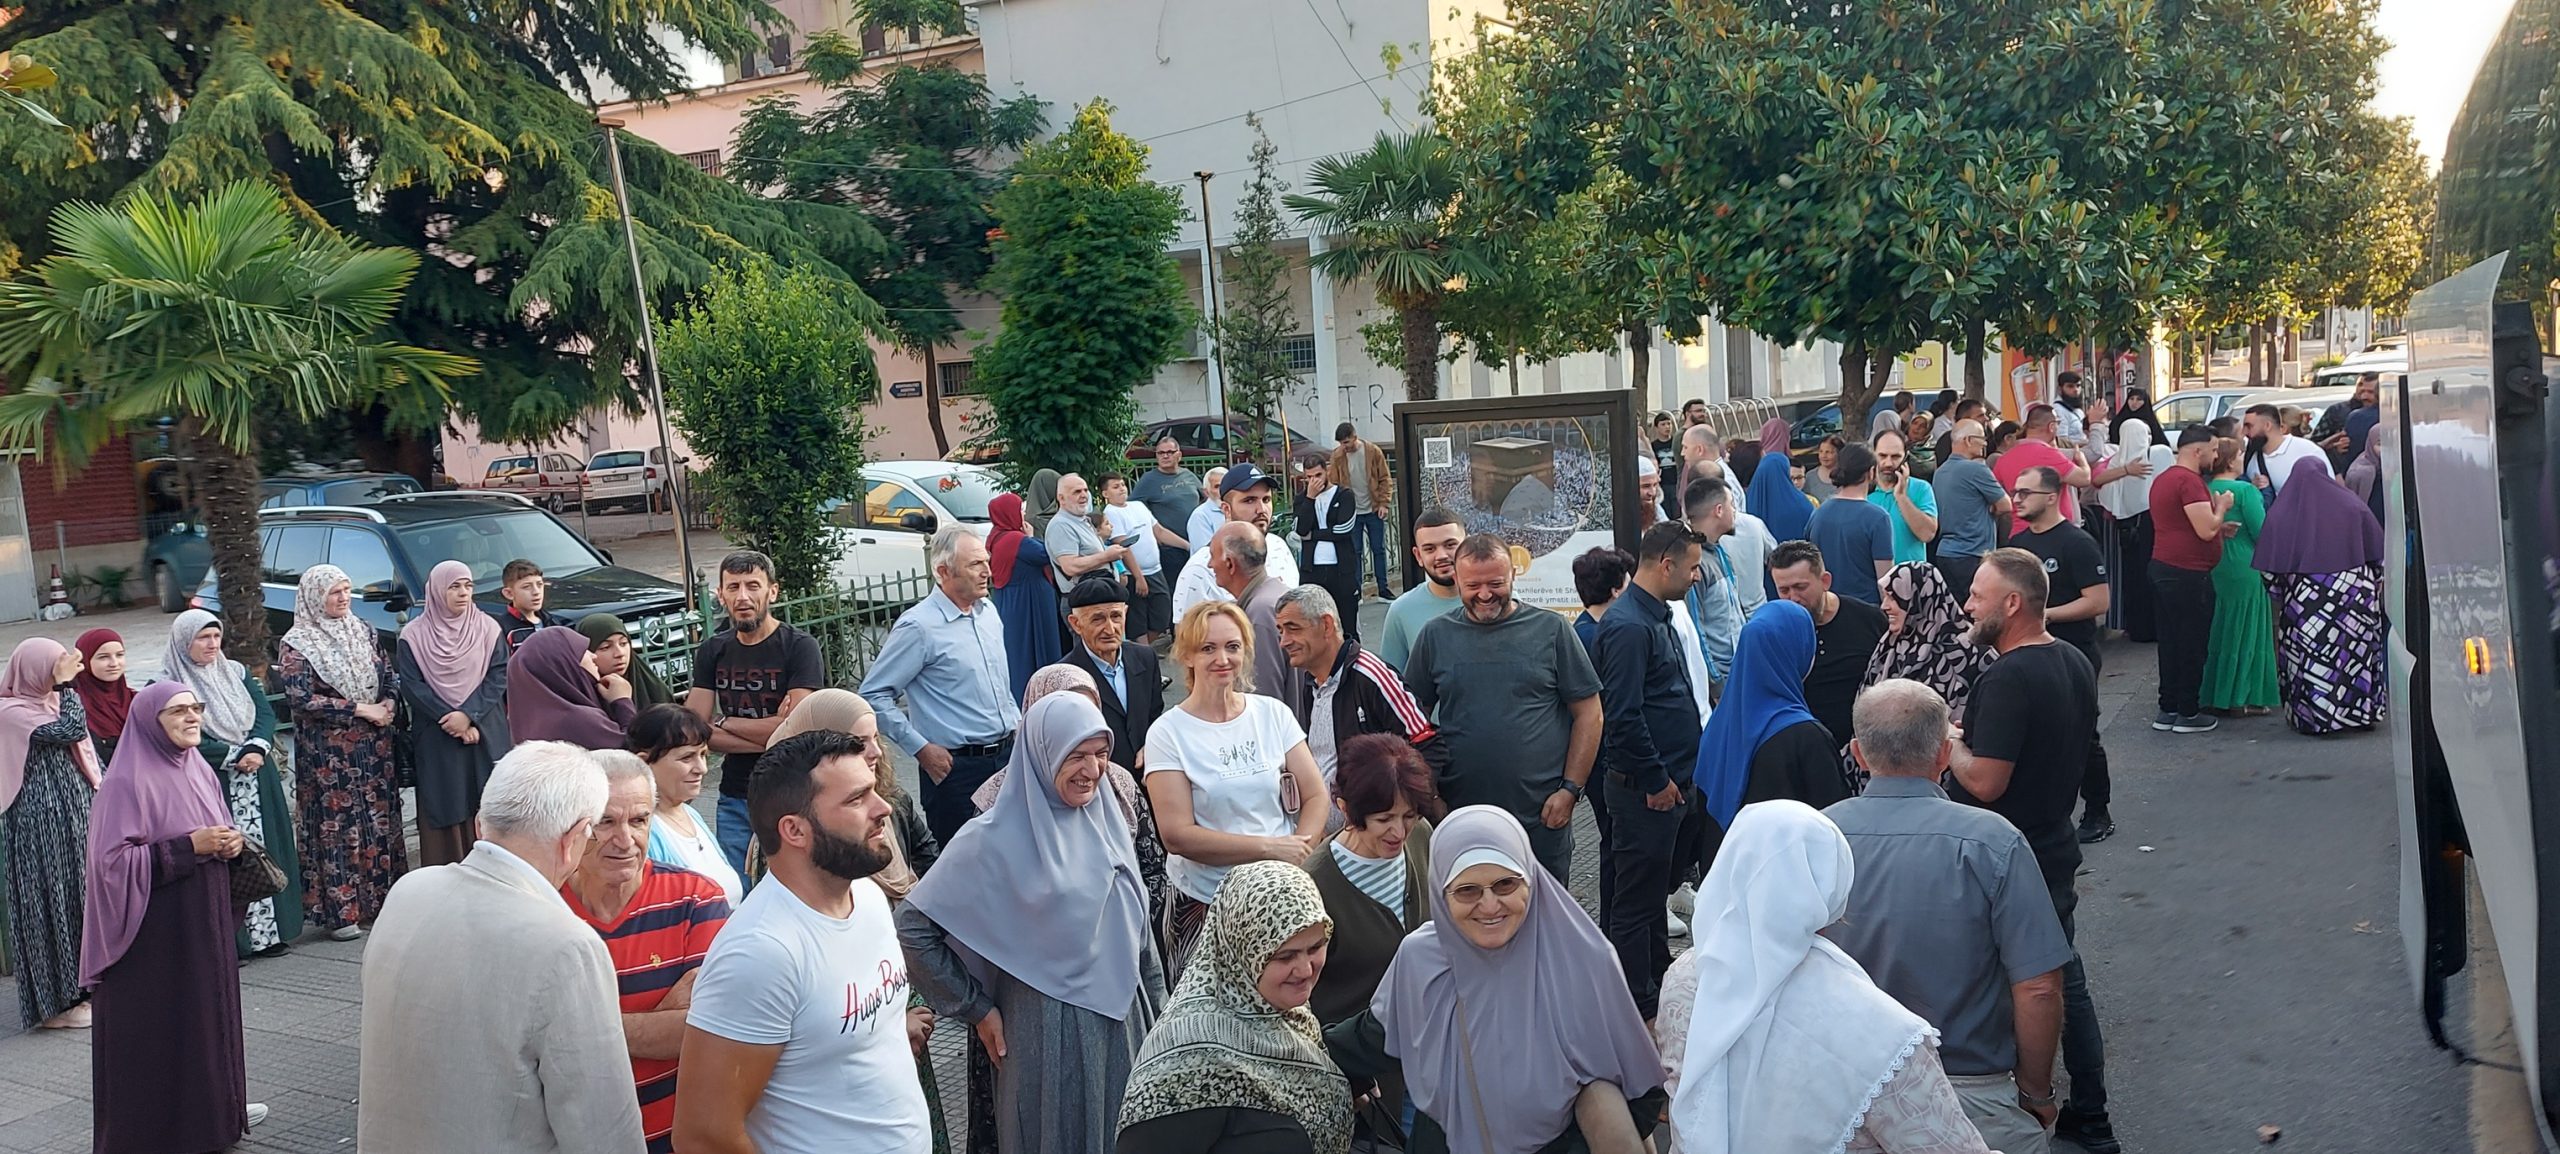 110 haxhilerë nga Shkodra u nisën për të kryer Haxhin e sivjetshëm…